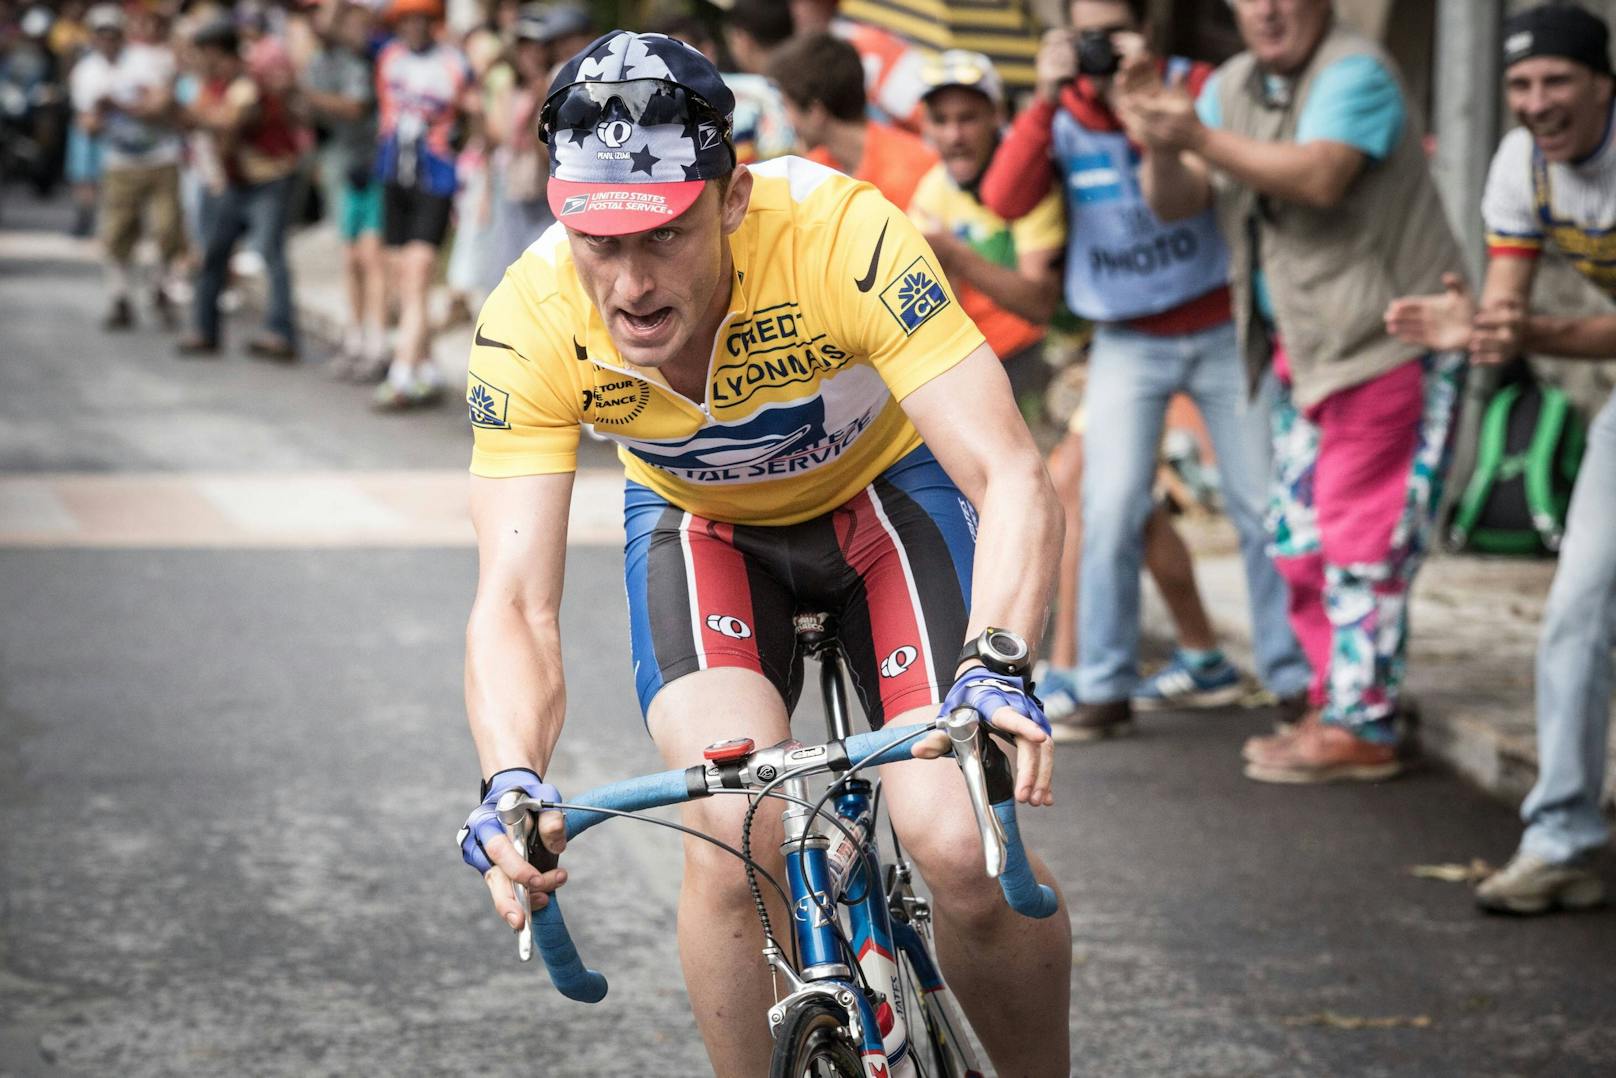 Doping-Jäger: "Wir sollten Lance Armstrong vergeben"